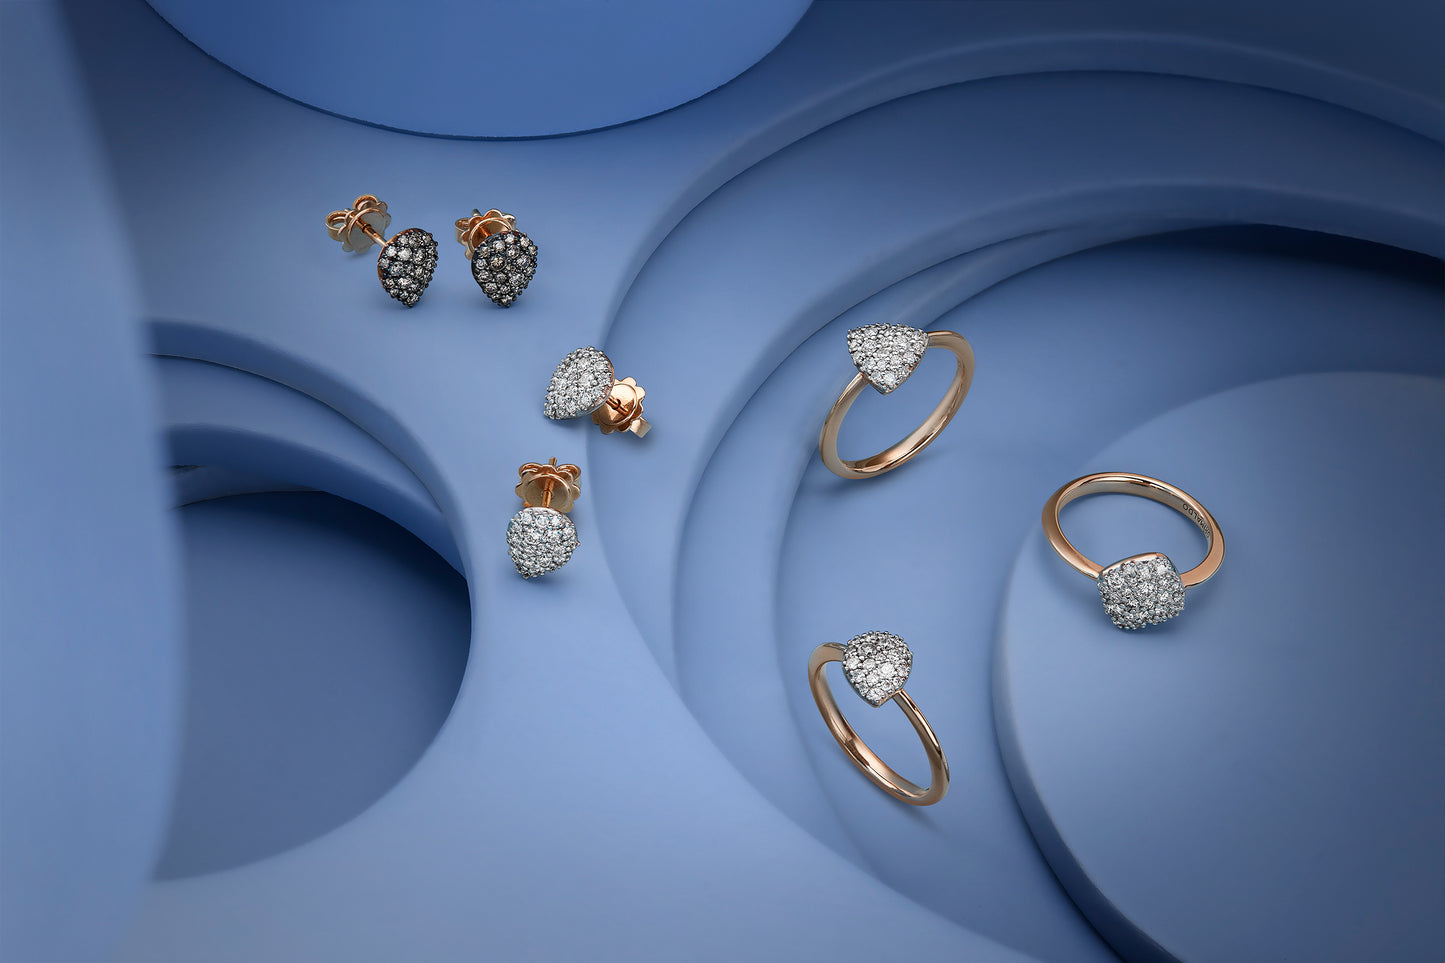 Luce Ring Triangel Diamant Pavé weiß, Roségold mit weißen Diamanten 0,33ct von Grimaldo Firenze online kaufen (Ref. LU-RG03PW-01)